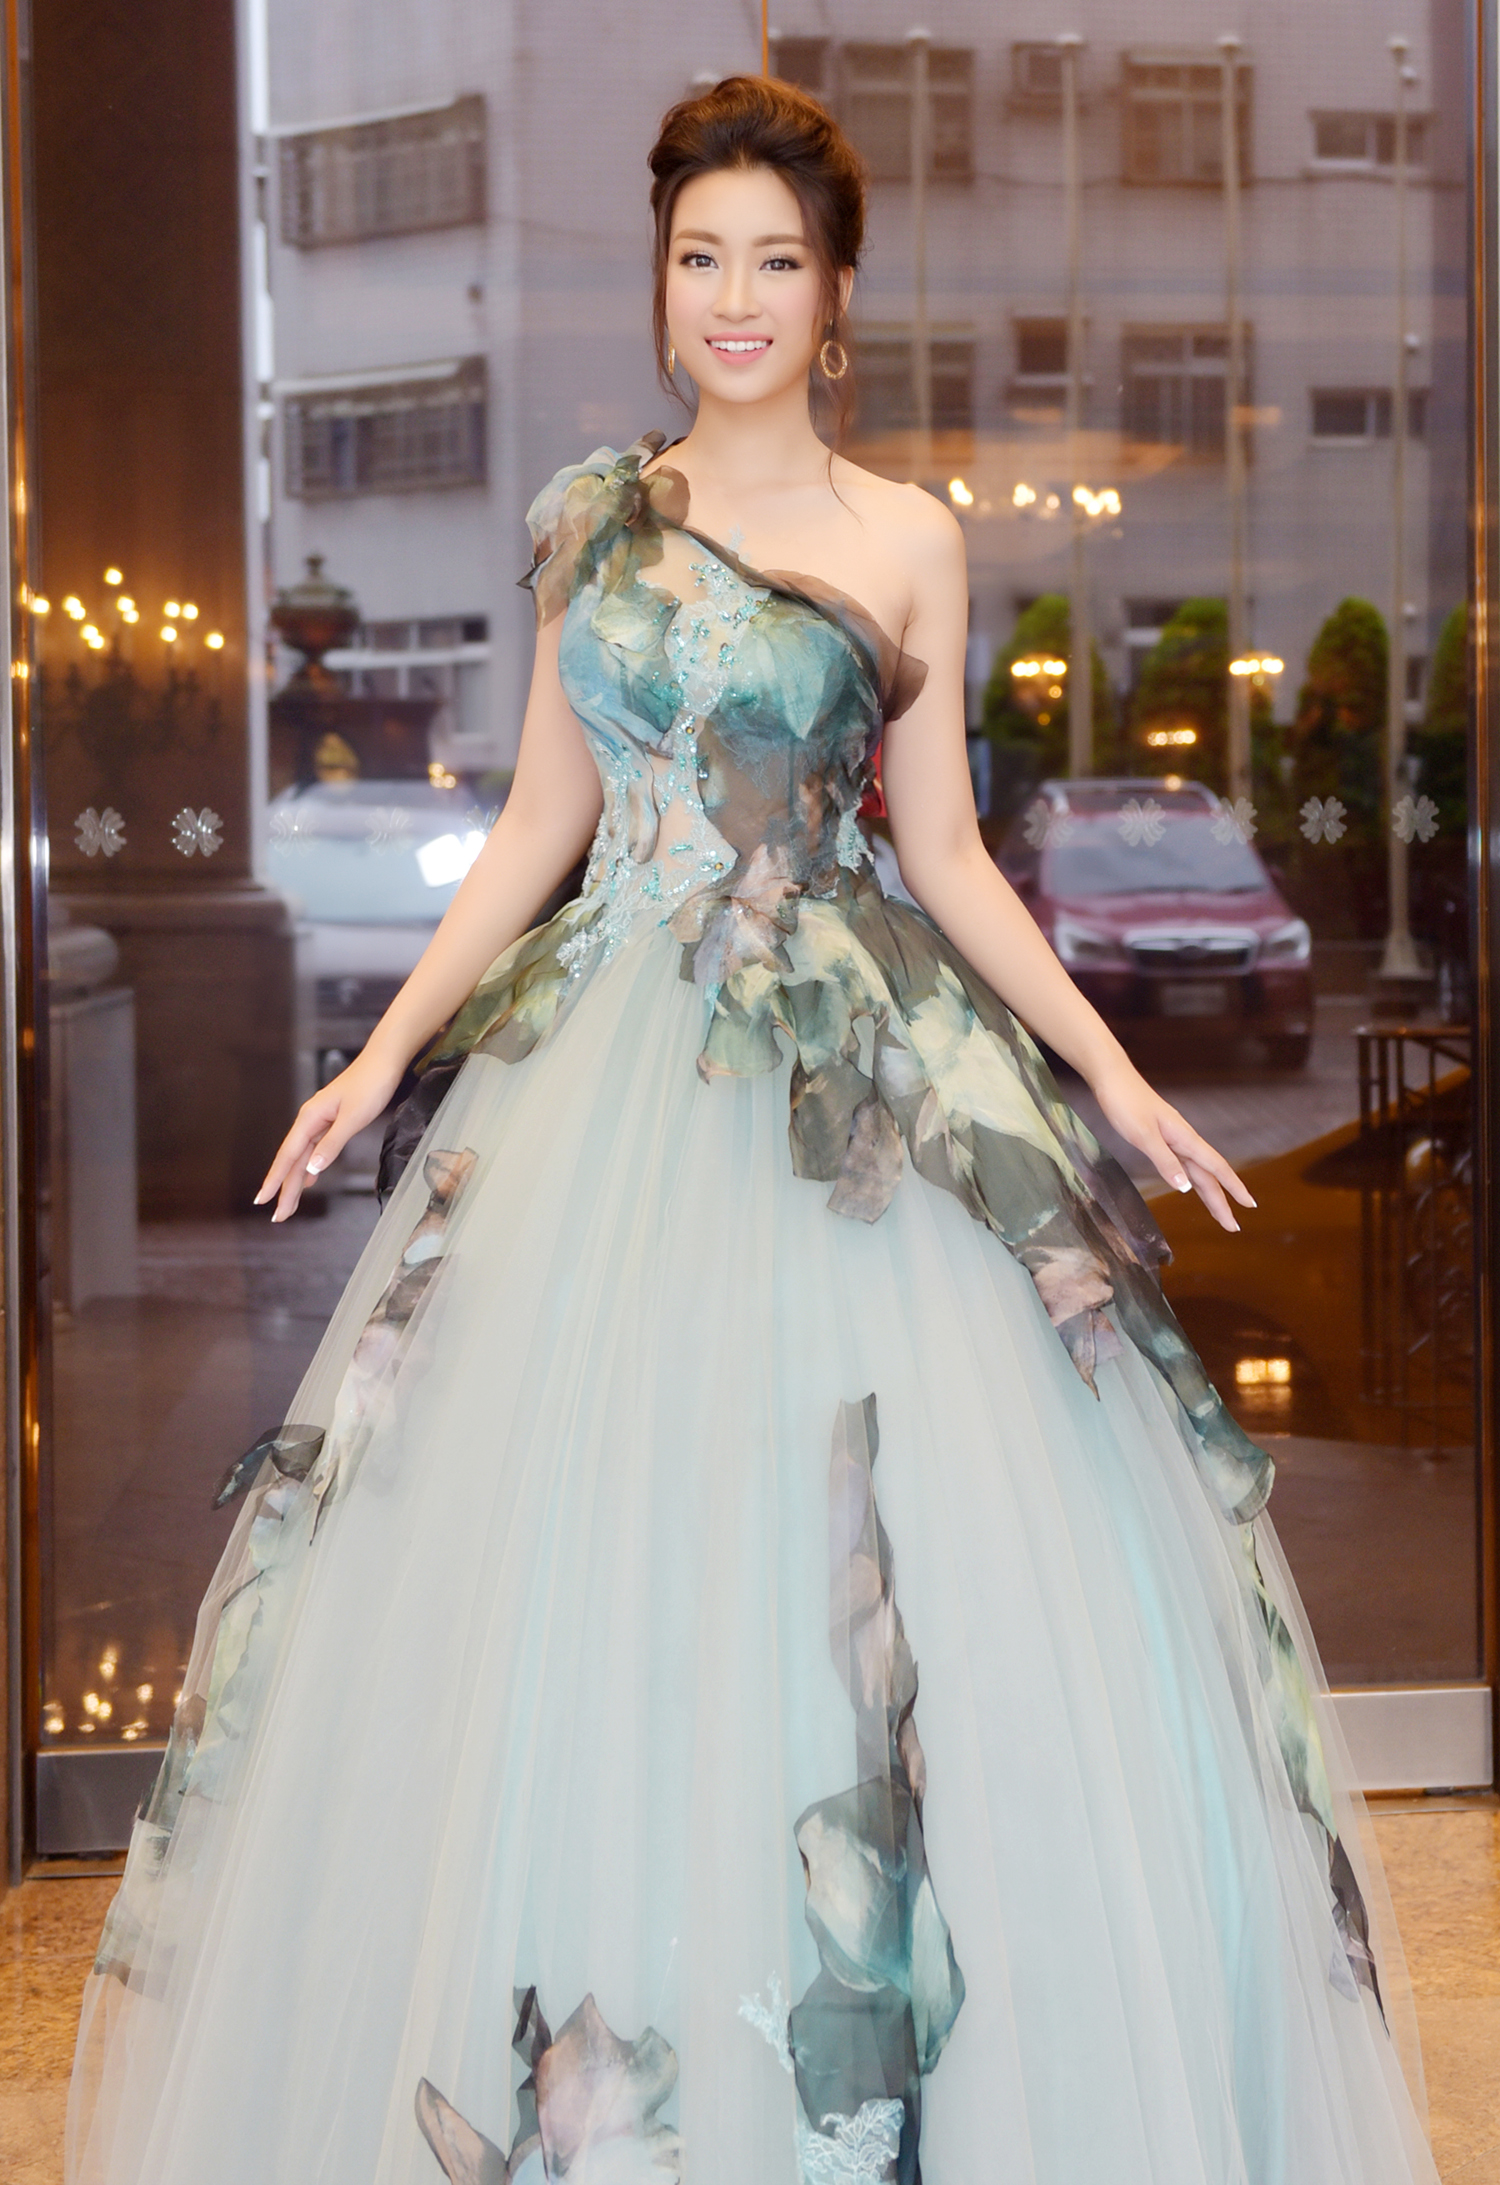 Hoa hậu đỗ mỹ linh diện đầm công chúa dự sự kiện ở đài loan